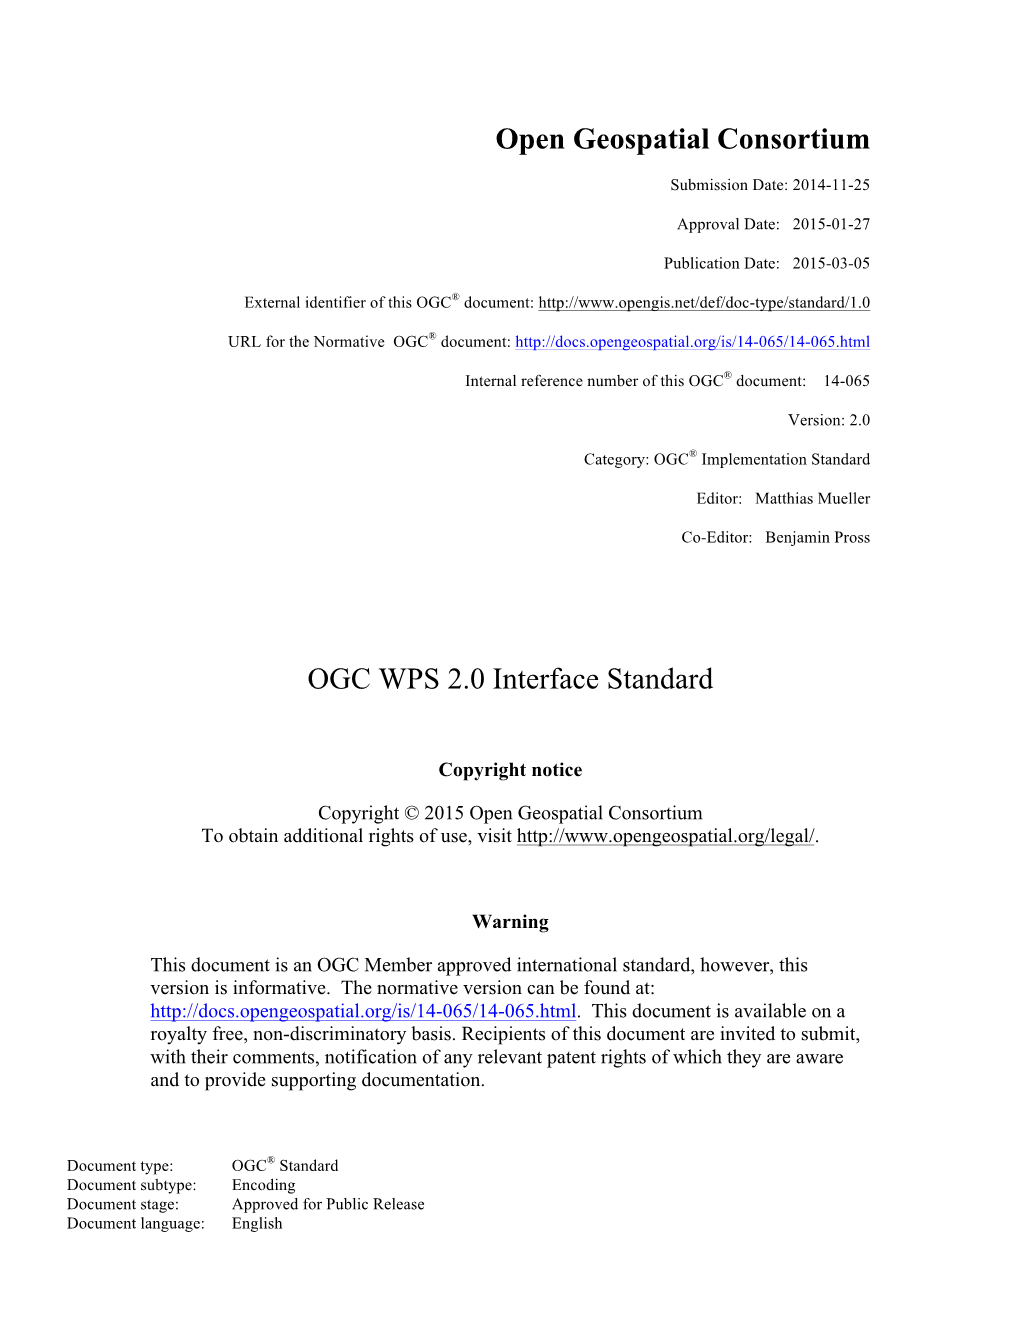 Open Geospatial Consortium OGC WPS 2.0 Interface Standard